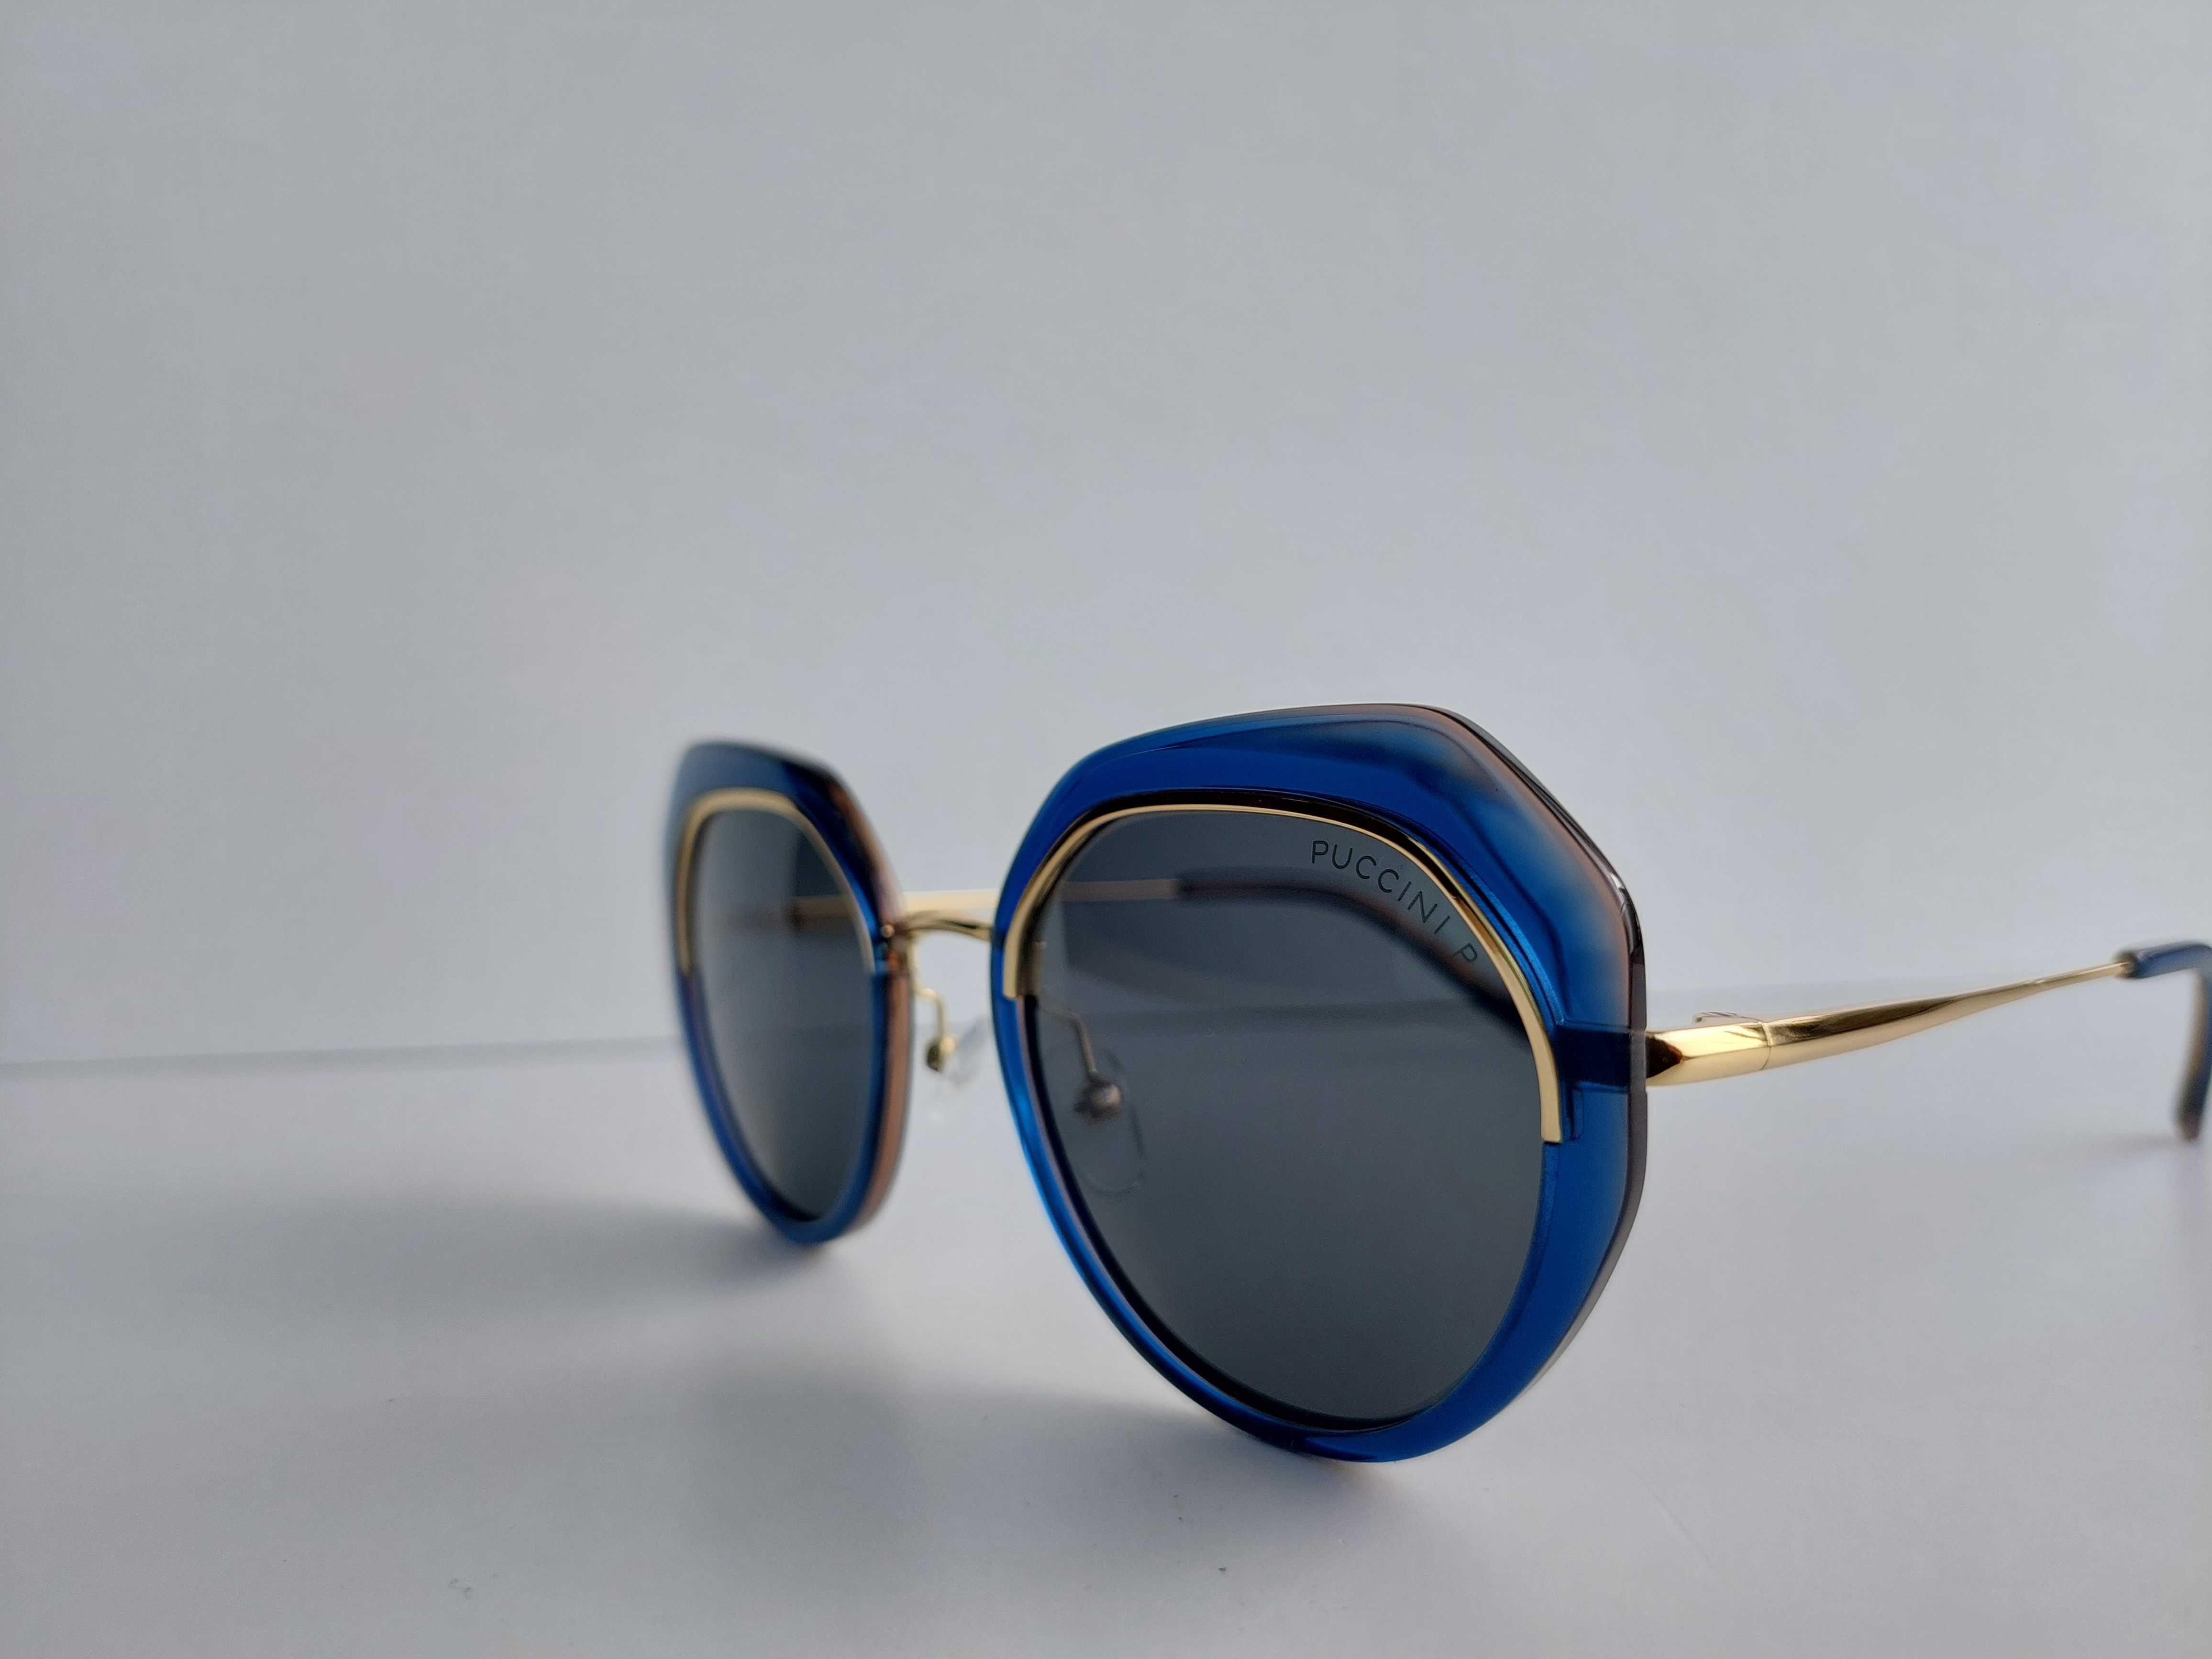 PUCCINI SPP 222 C3 - Nowe Piękne Stylowe okulary przeciwsłoneczne